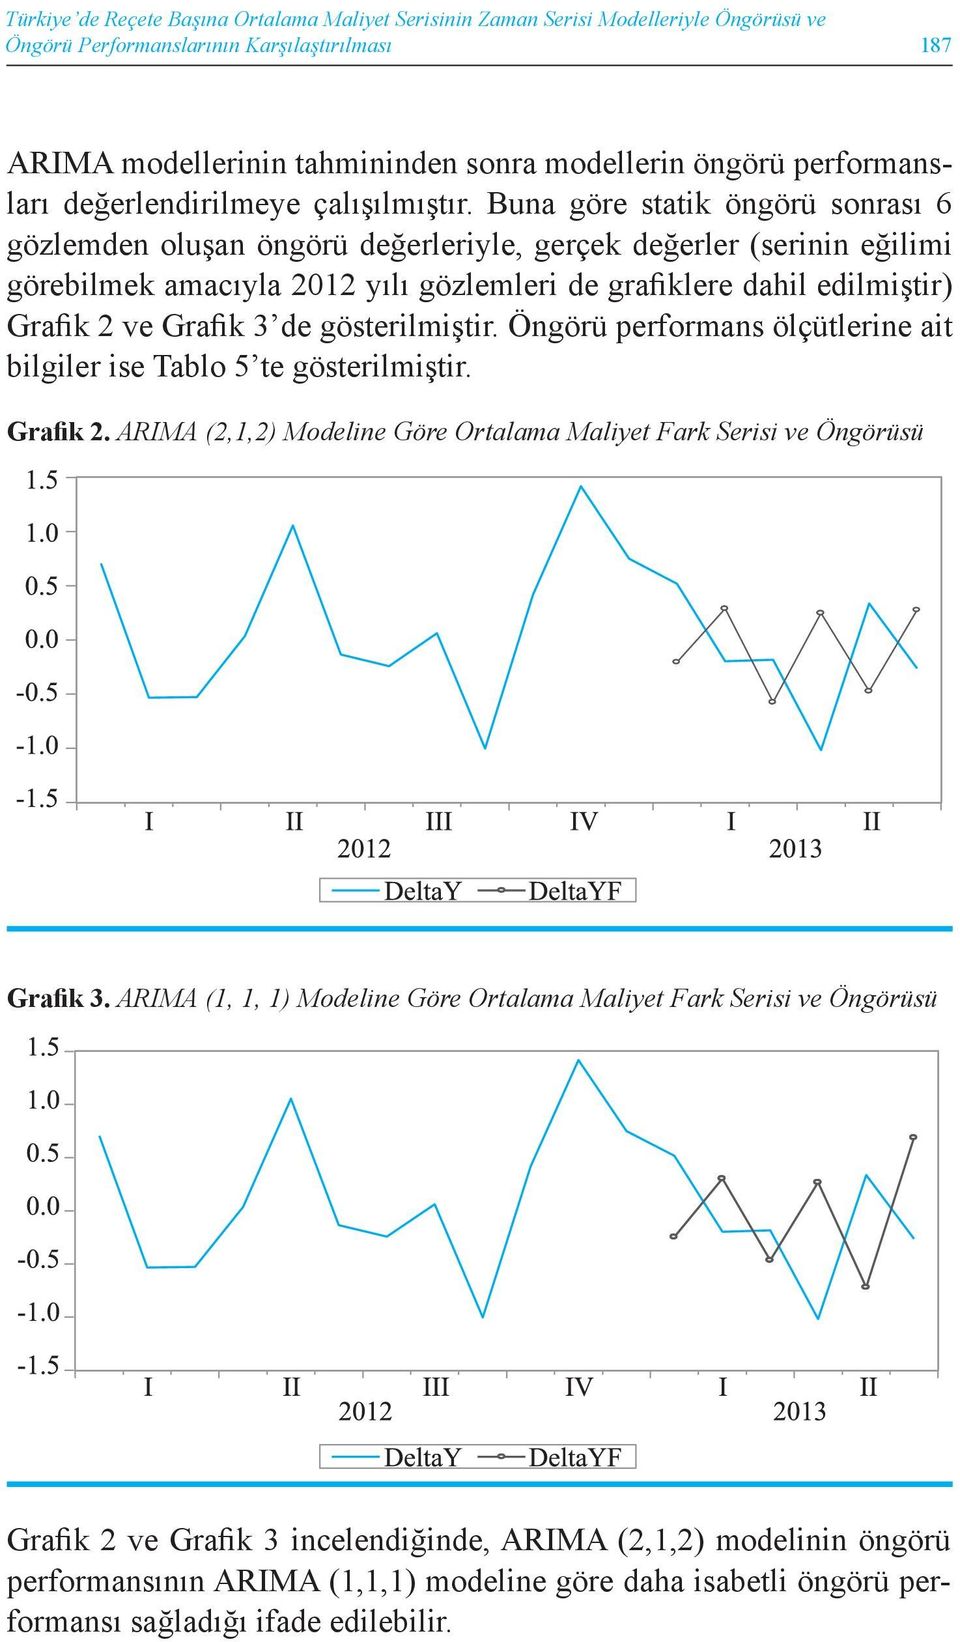 Buna göre statik öngörü sonrası 6 gözlemden oluşan öngörü değerleriyle, gerçek değerler (serinin eğilimi görebilmek amacıyla 2012 yılı gözlemleri de grafiklere dahil edilmiştir) Grafik 2 ve Grafik 3